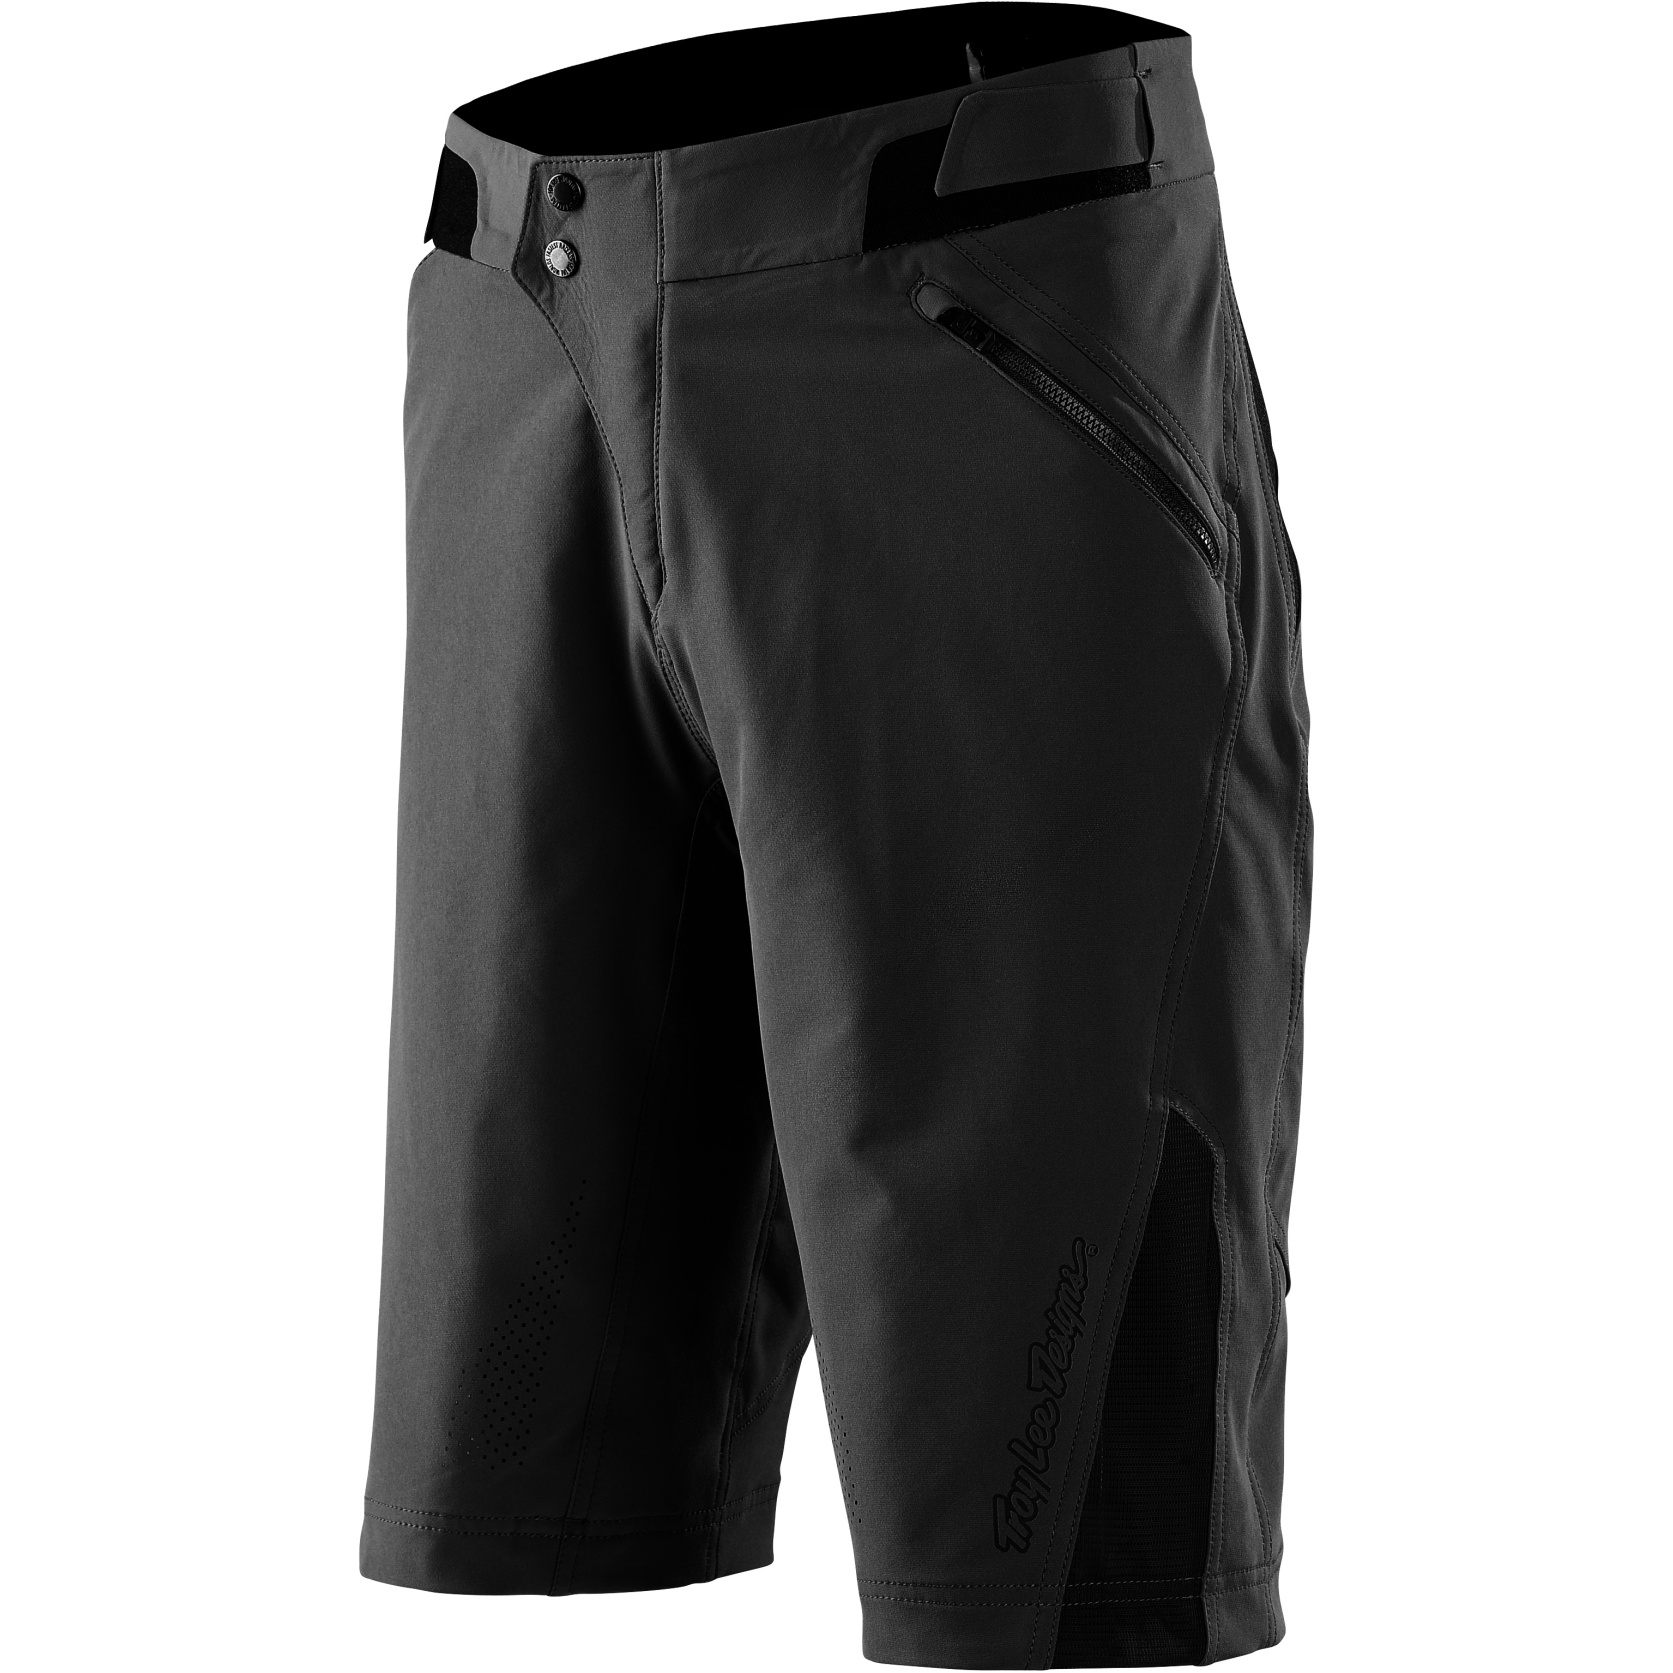 Productfoto van Troy Lee Designs Ruckus Shorts - Solid Black